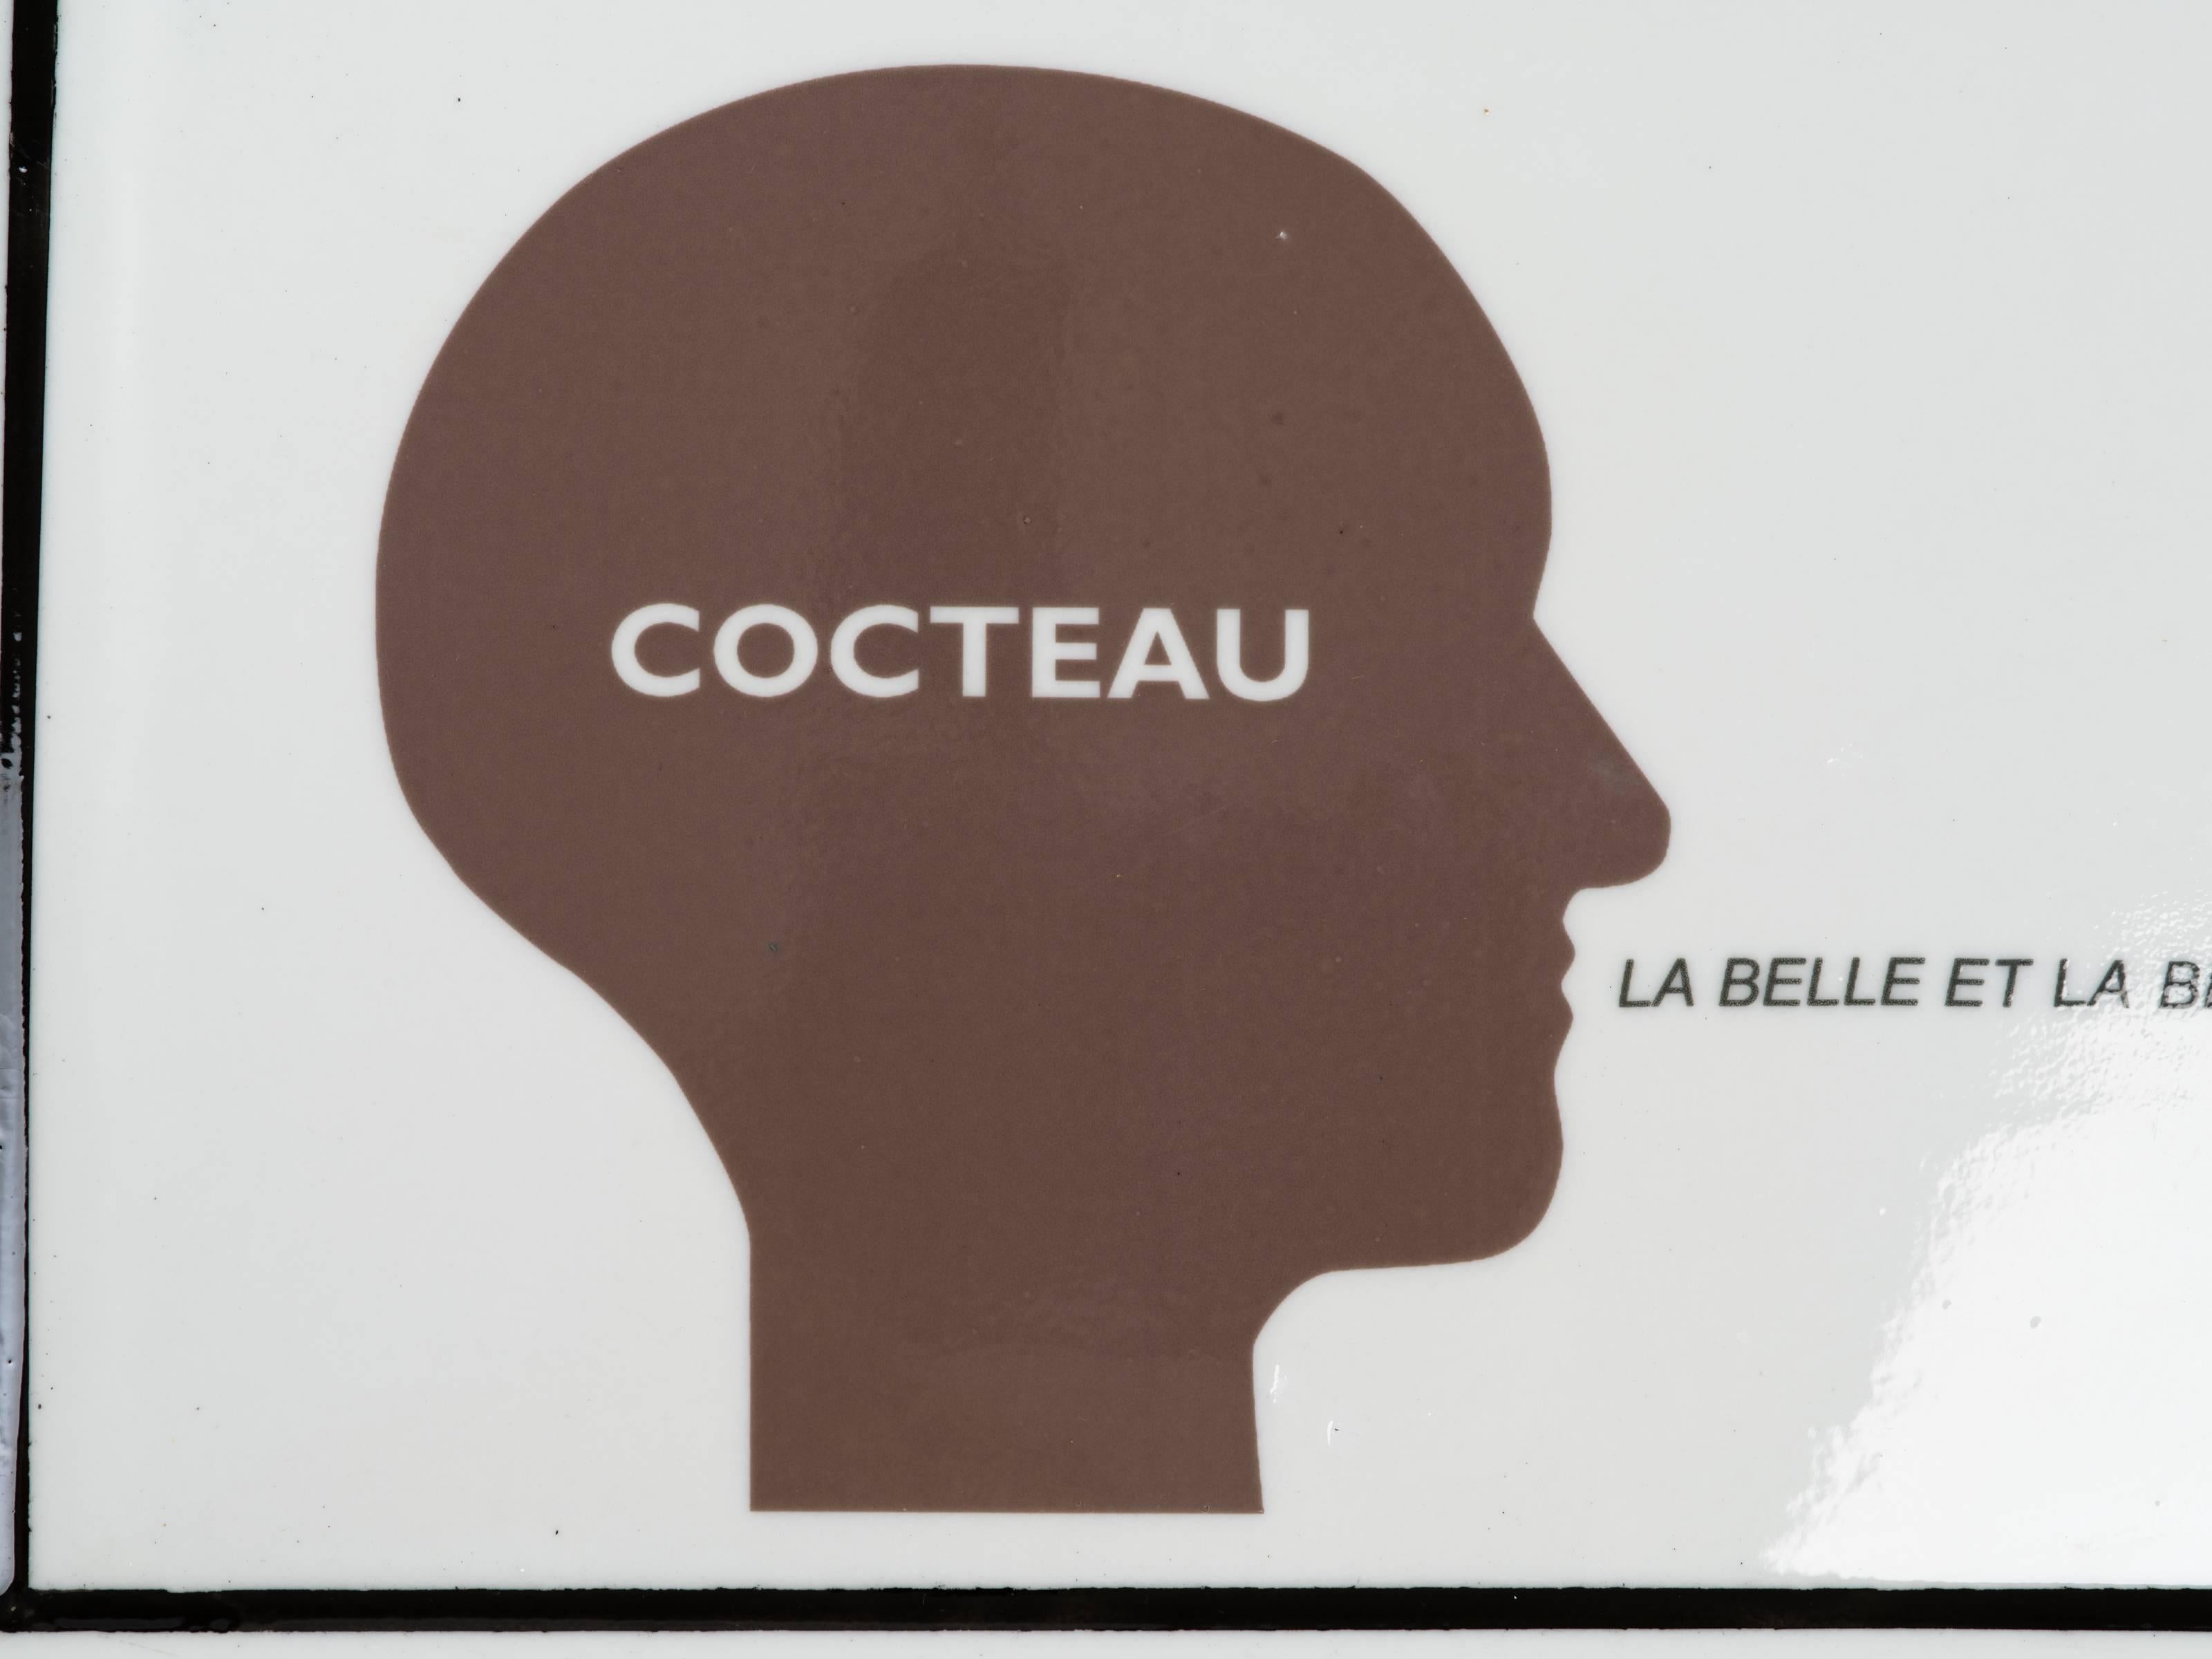 Cocteau, La Belle Et La Bete ceramic serving tray by French conceptual artist Nicola L. Signed on reverse, Nicola L. 2007 Galerie A Rebours Edition 2/50.